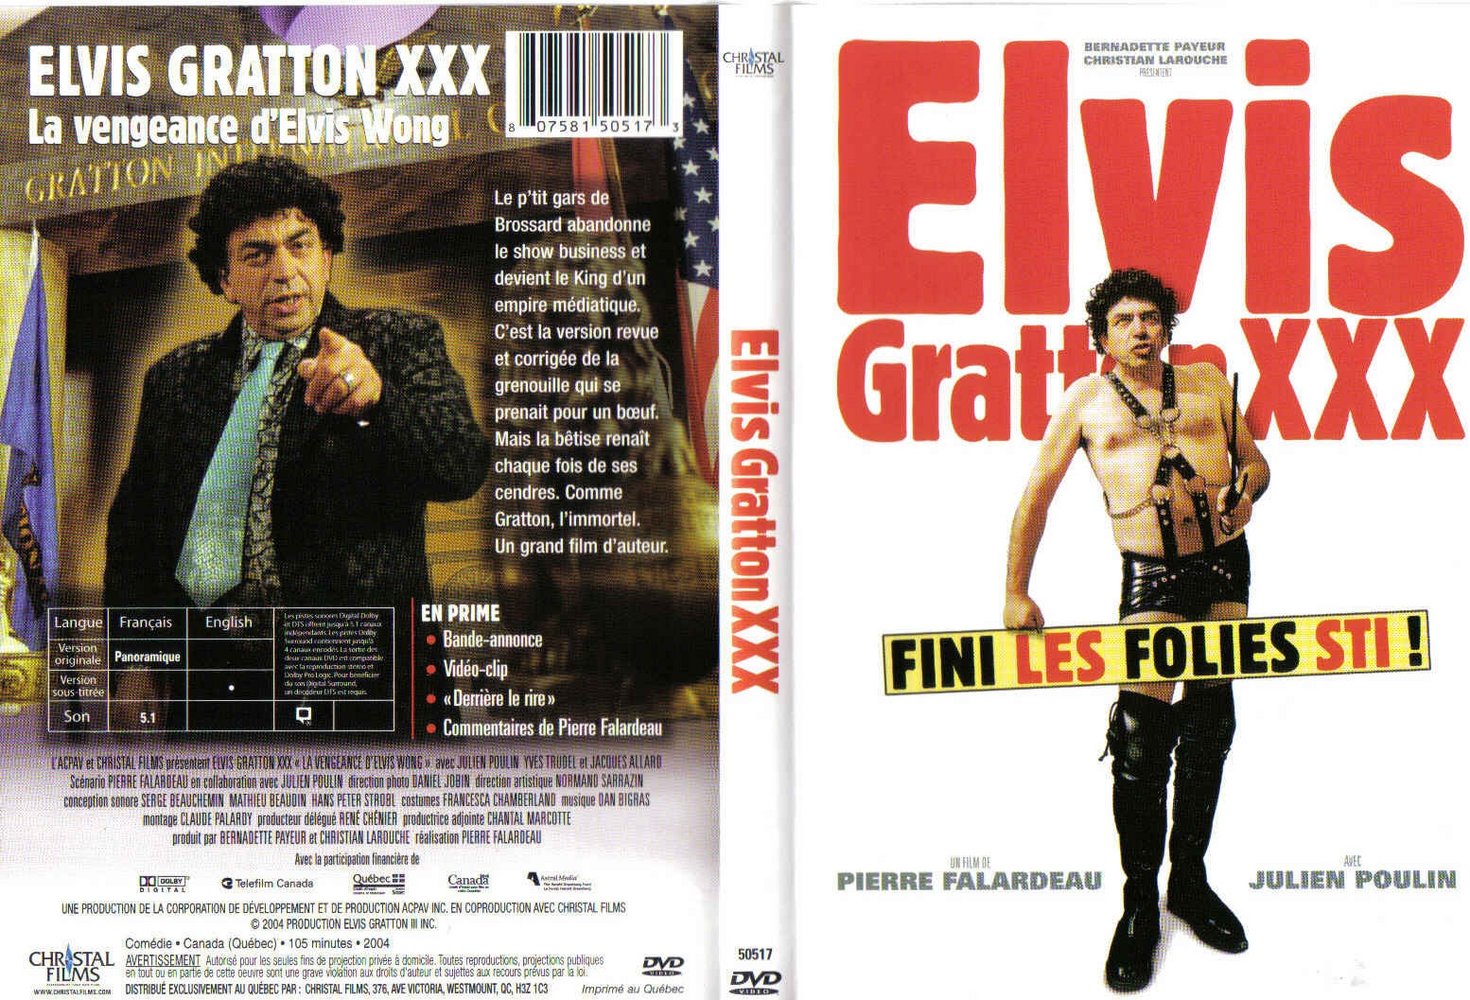 Jaquette DVD Elvis Gratton XXX